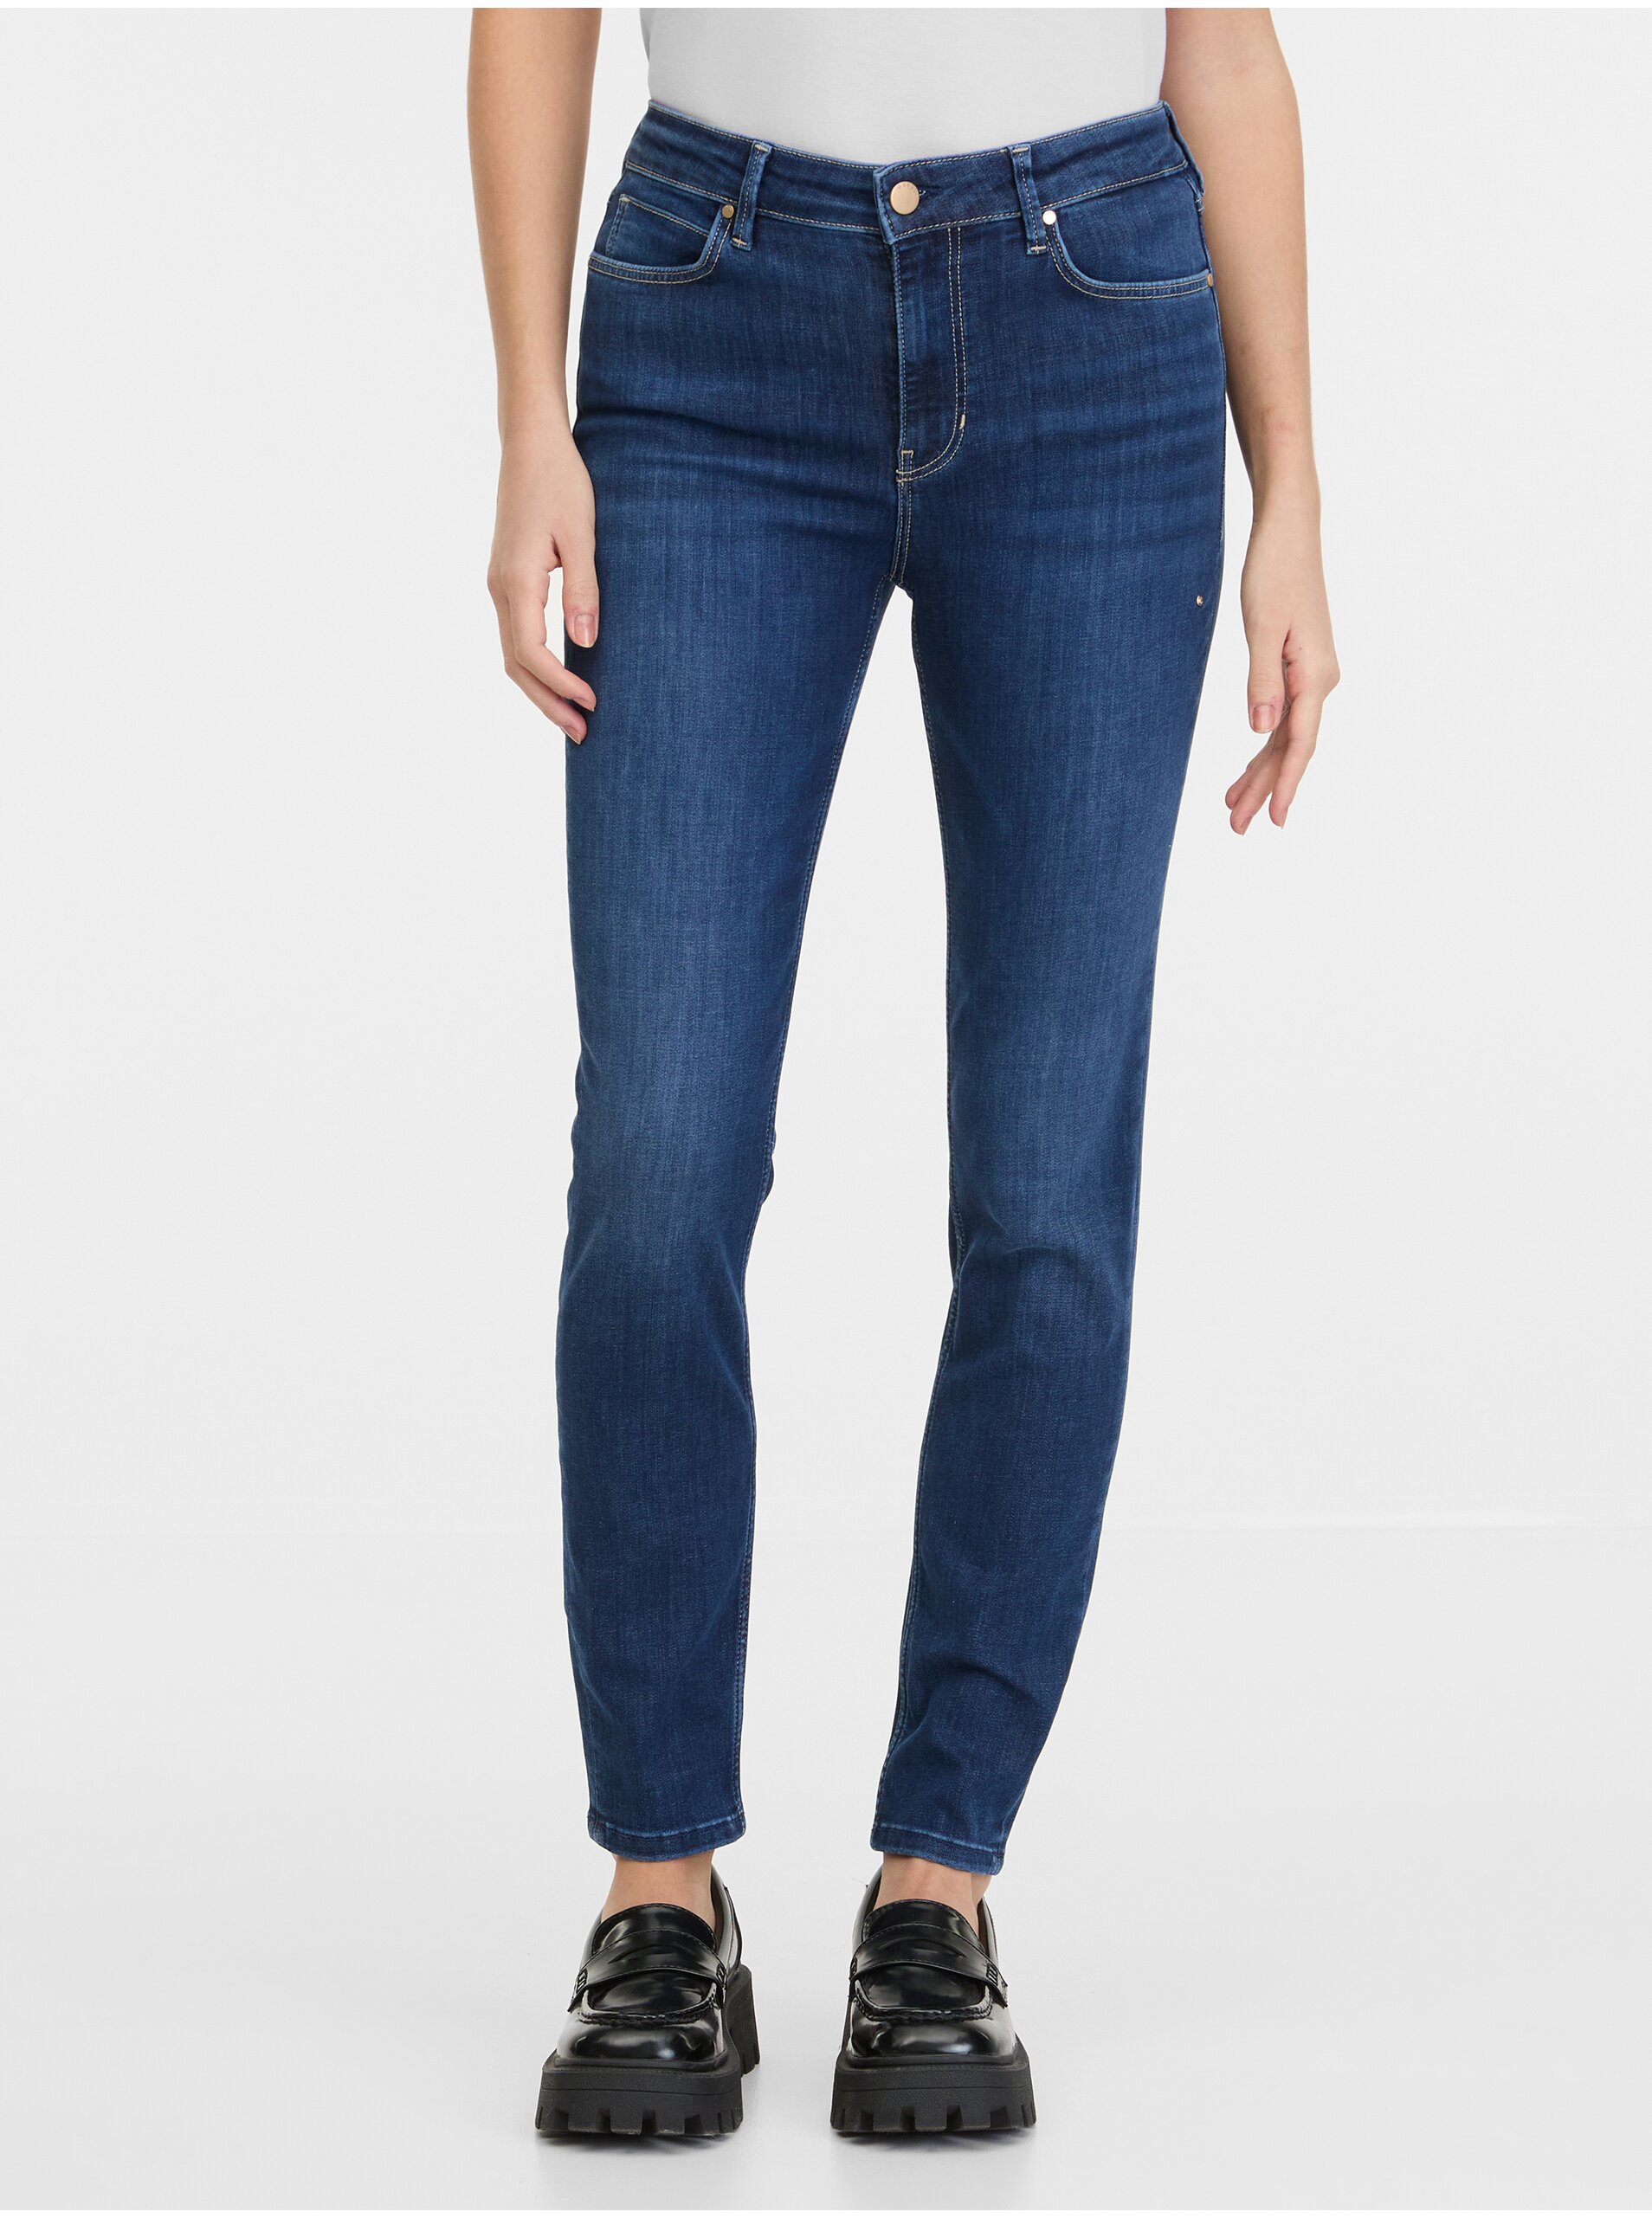 Blue women's skinny fit jeans Guess 1981 - Women